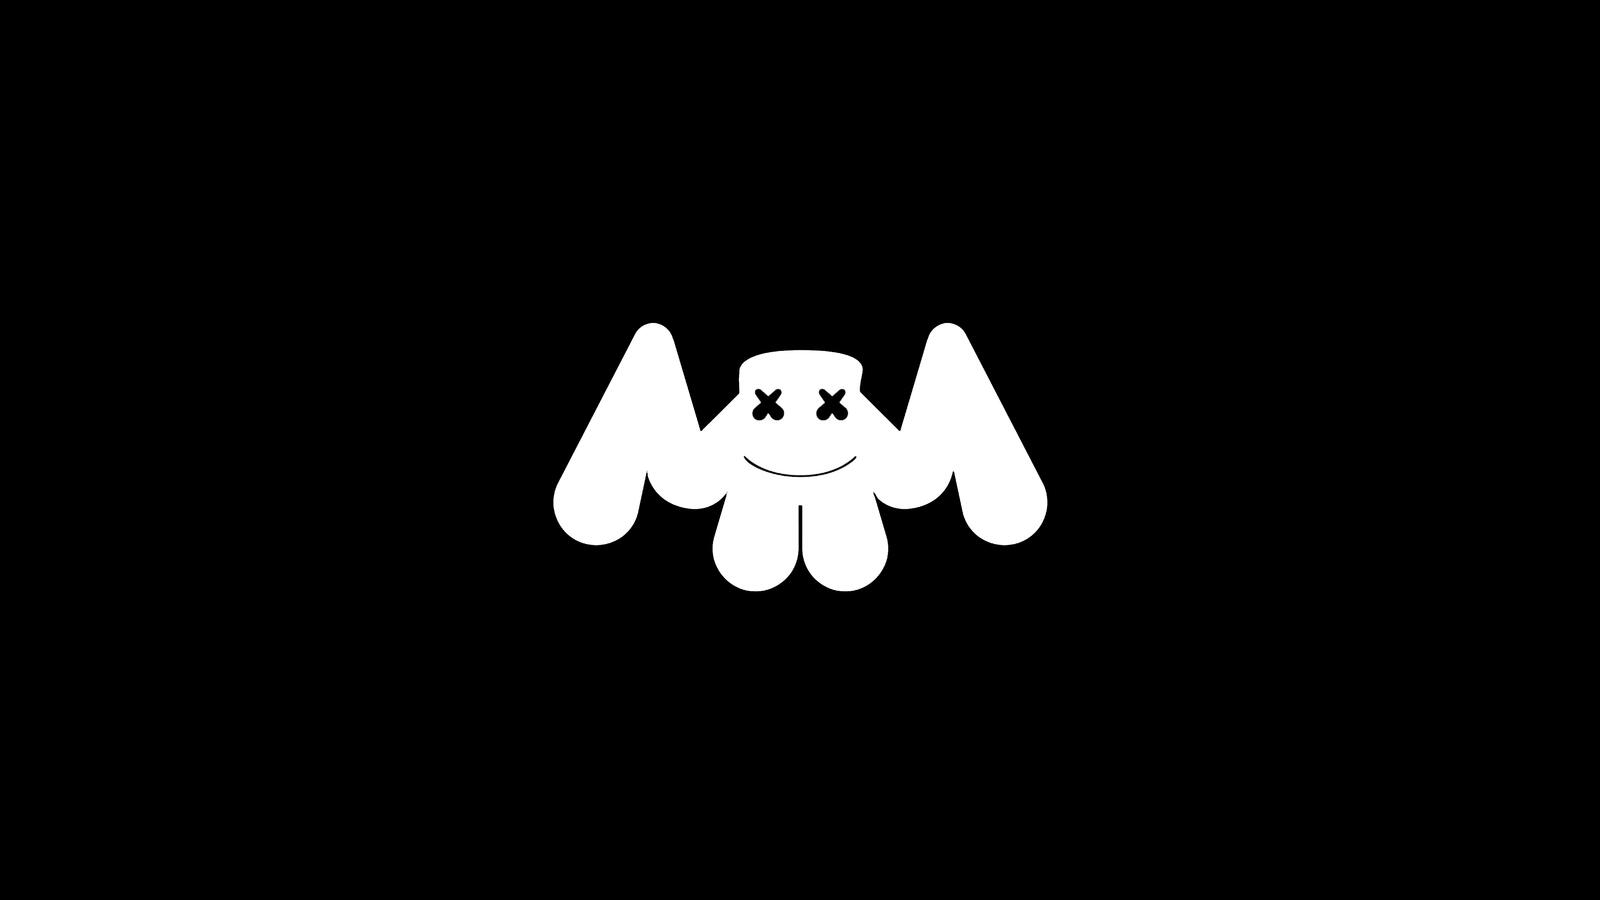 Wallpapers miscellaneous Marshmello logo on the desktop